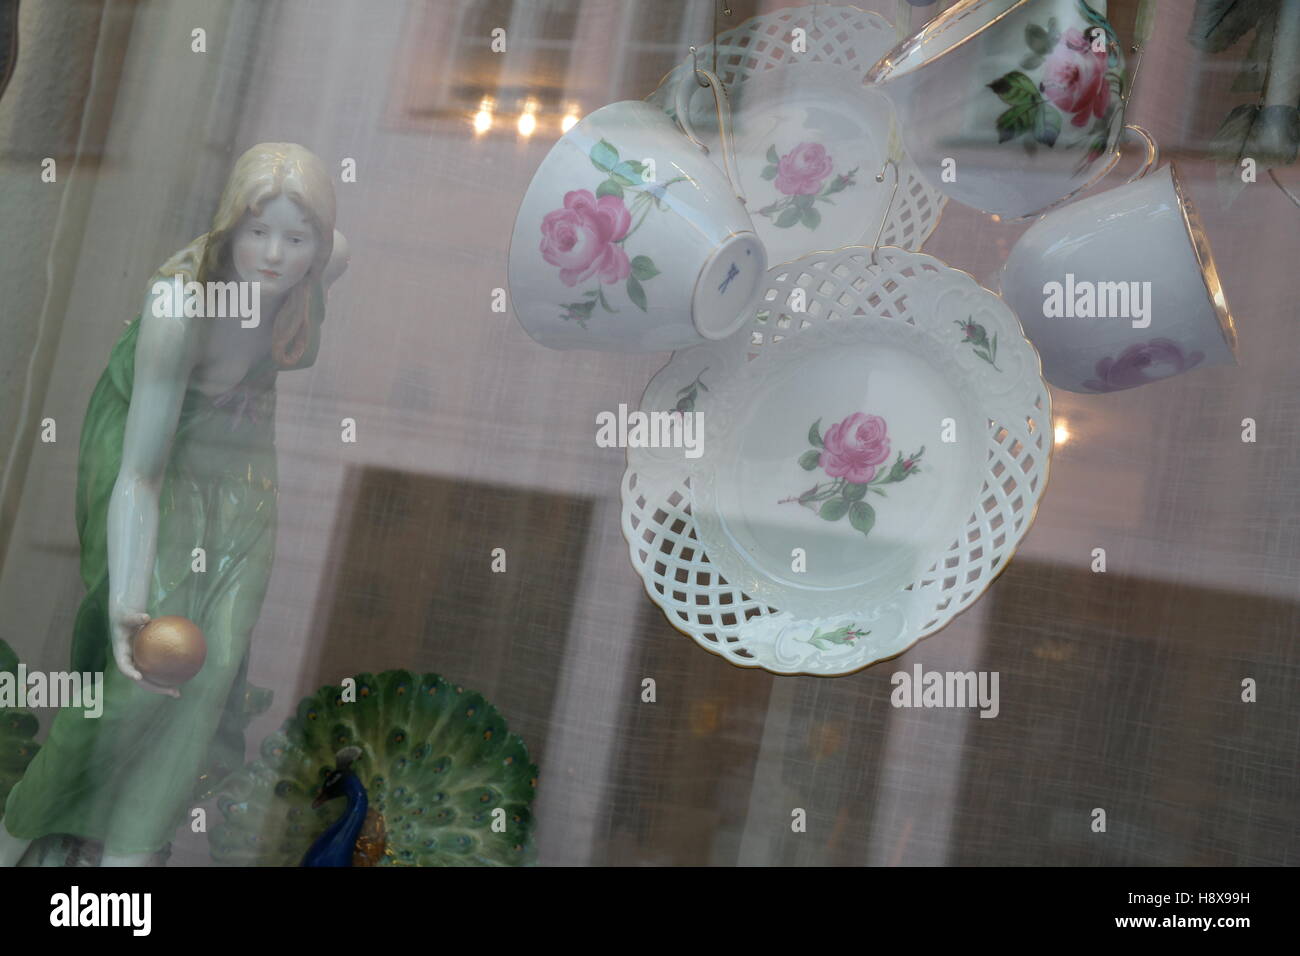 Porzellan in einem Schaufenster in Meißen, Deutschland Stock Photo